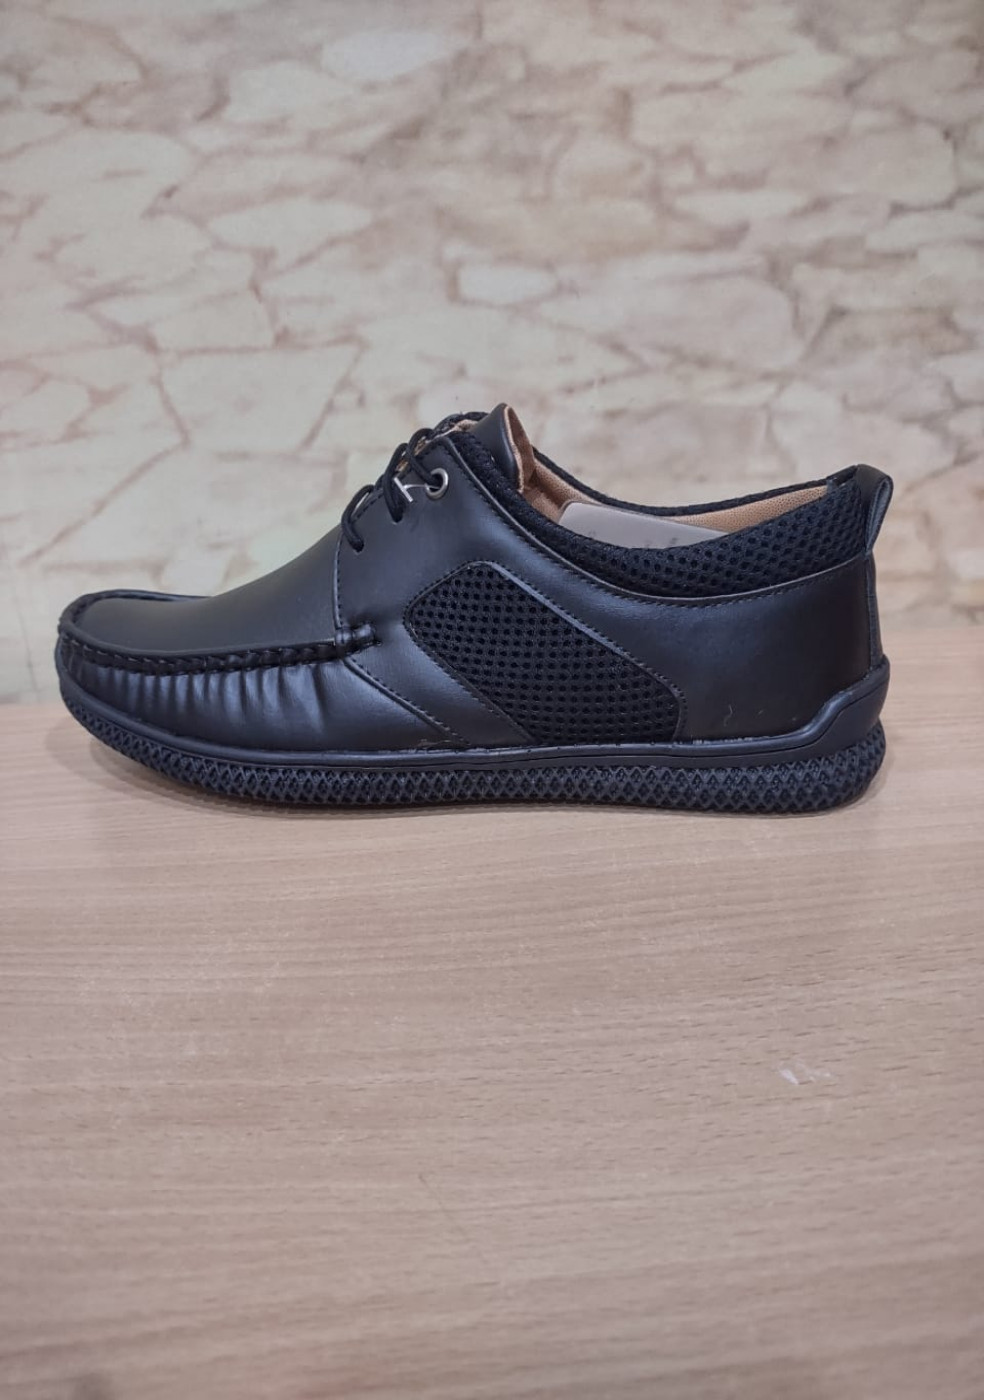 BANISSION Black Shoes For Men